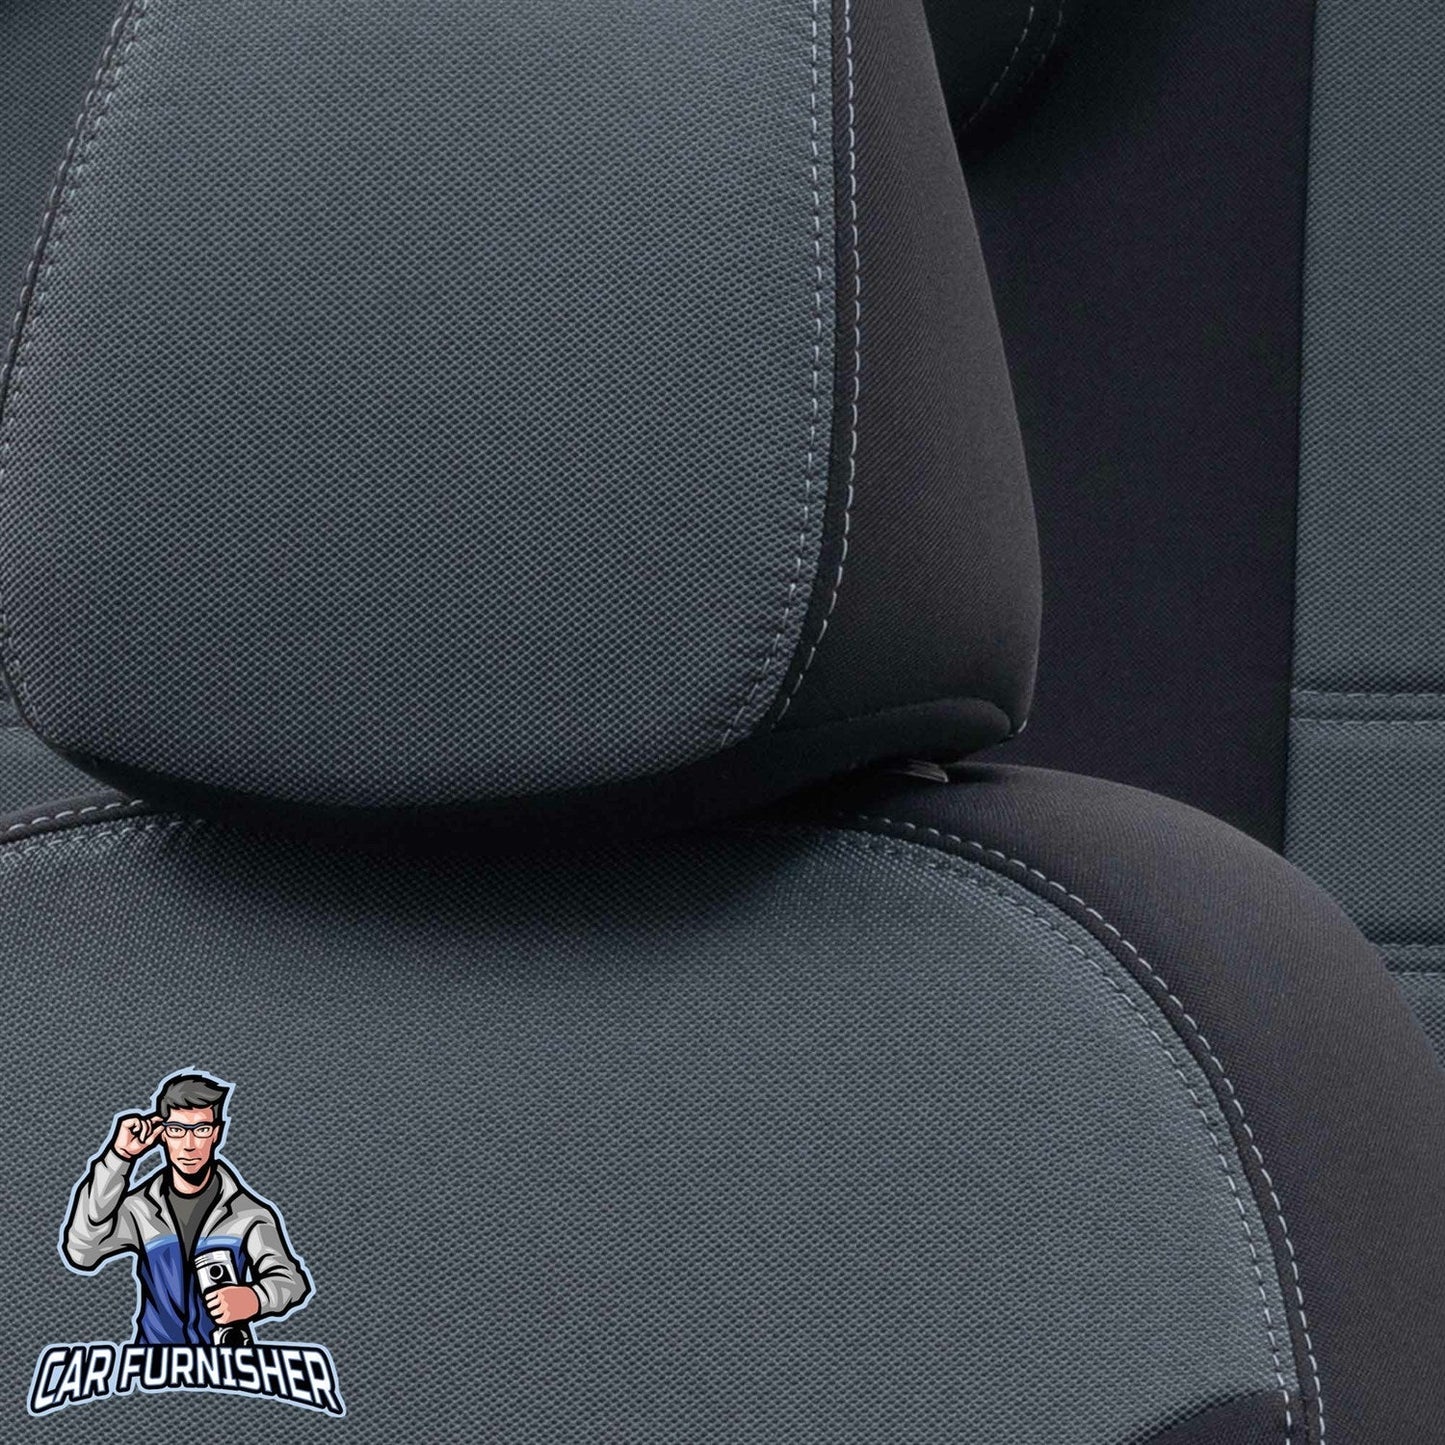 Chery Tiggo Seat Covers Original Jacquard Design Smoked Black Jacquard Fabric